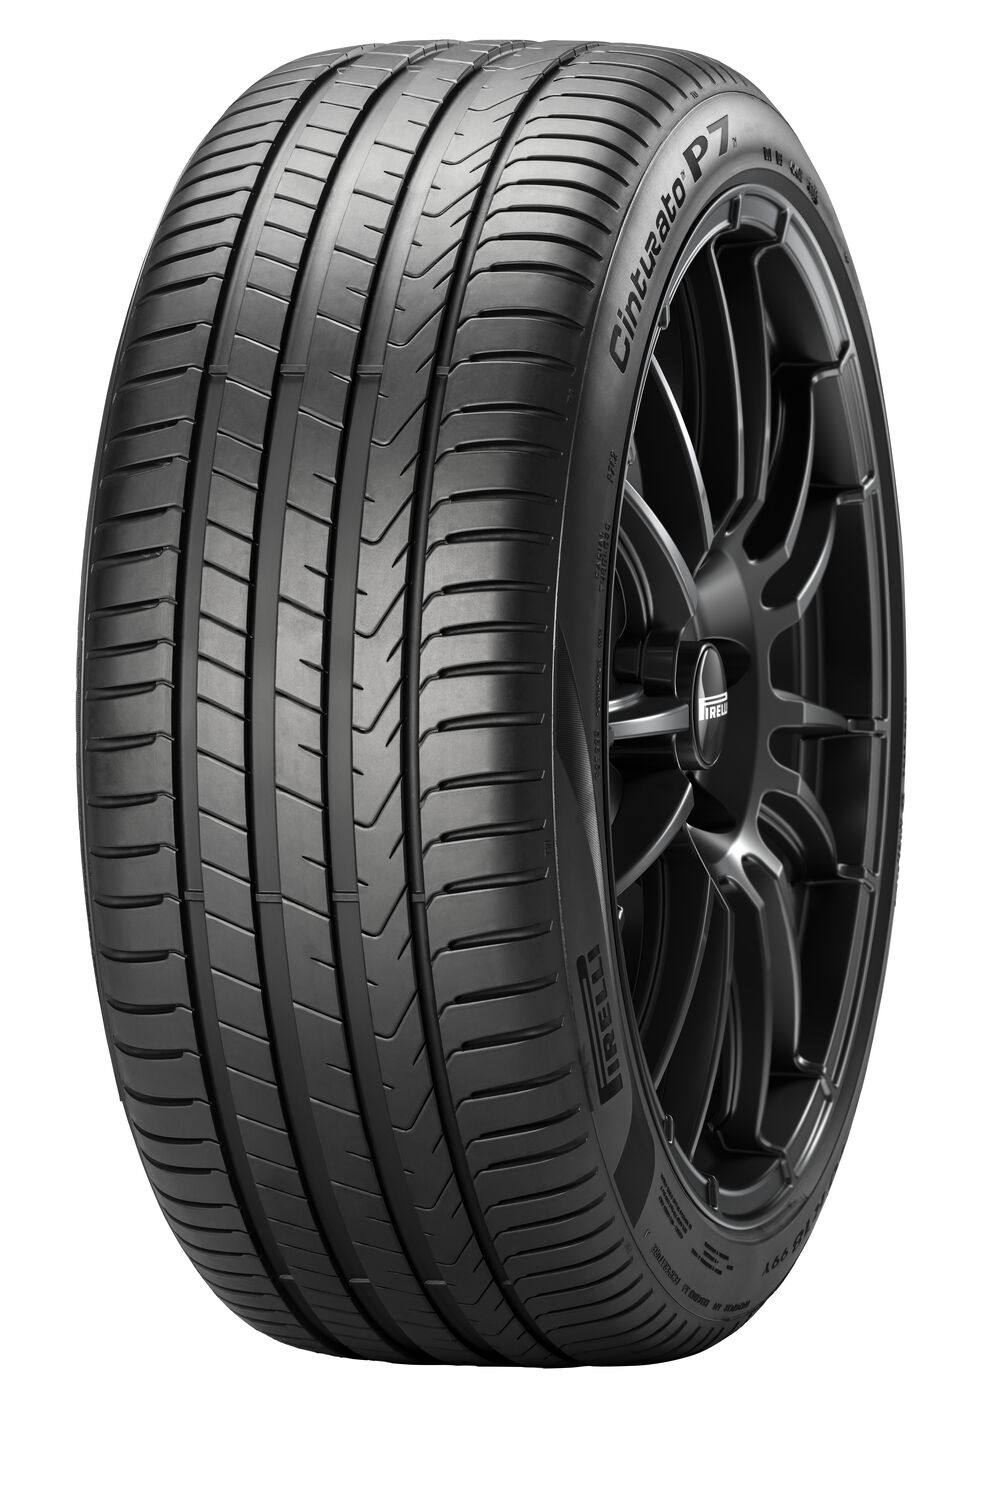 Gomme Nuove Pirelli 225/45 R17 91Y Cinturato P7 P7C2 pneumatici nuovi Estivo